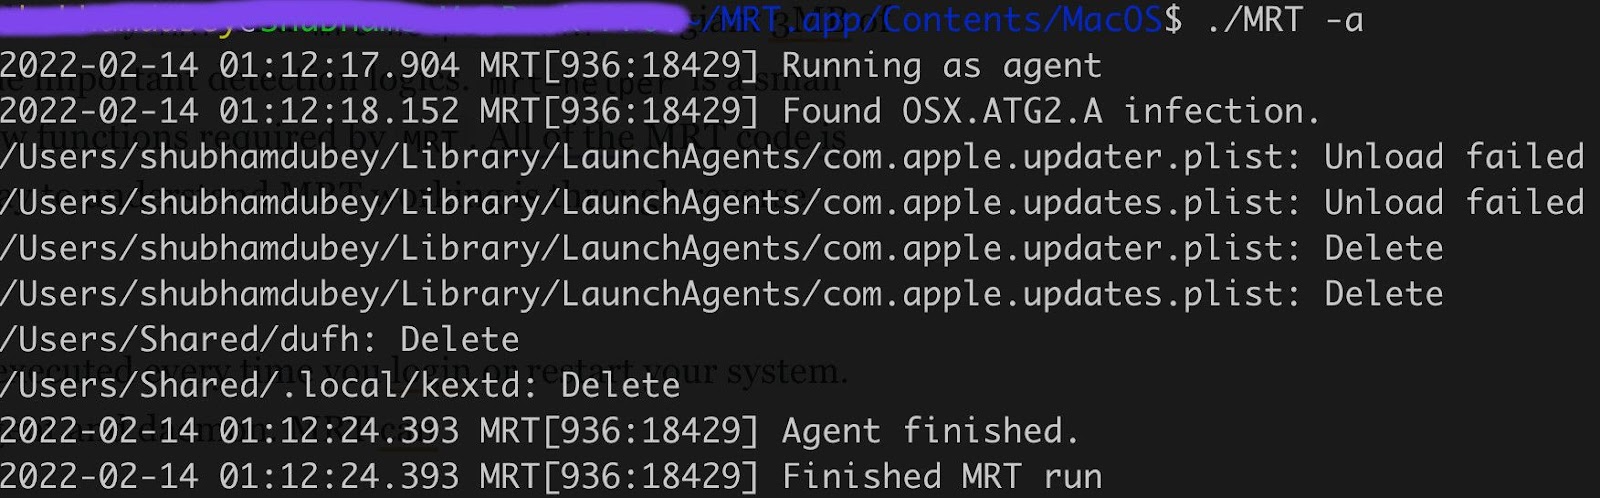 MRT завершает вредоносные процессы и удаляет подозрительные файлы (источник скриншота)